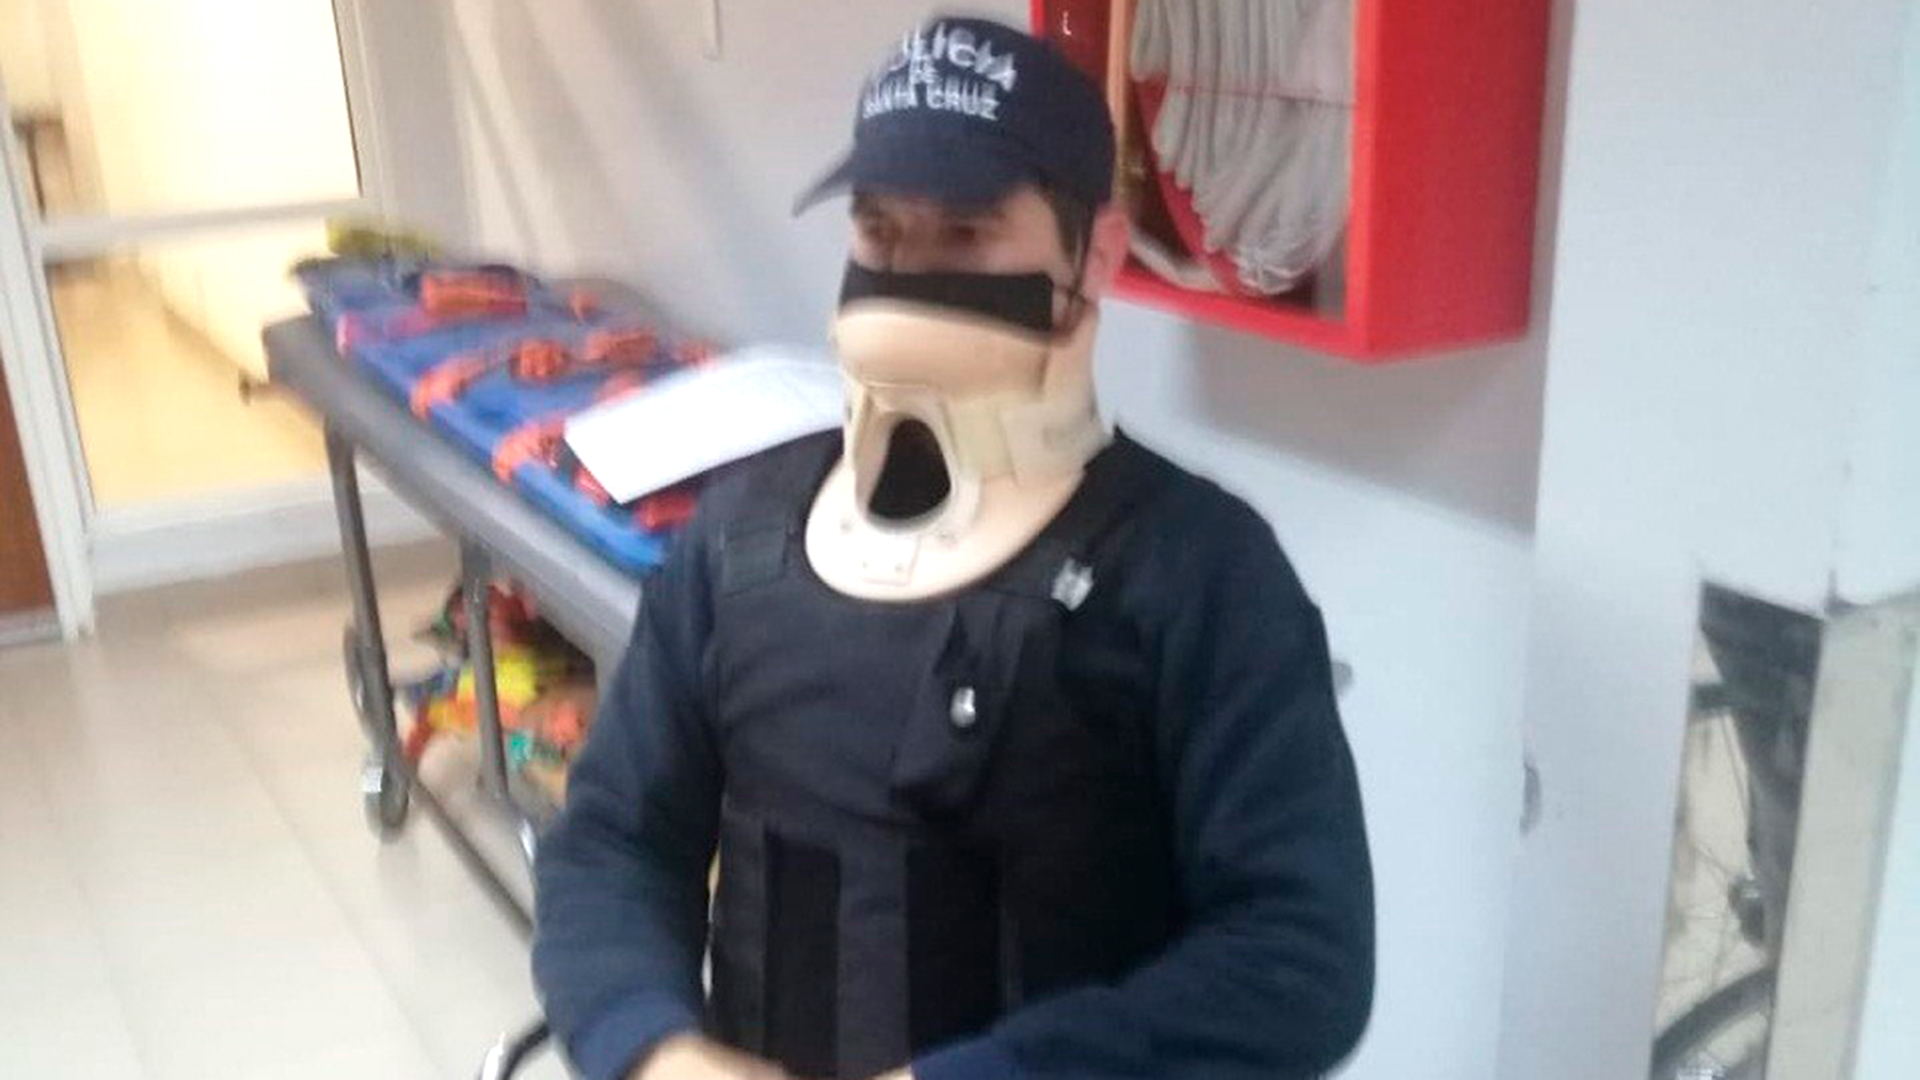 El cabo Juan Carlos Rodríguez, con el cuello ortopédico (puesto por precaución) después de haber sufrido el ataque por parte de la familia Casarini